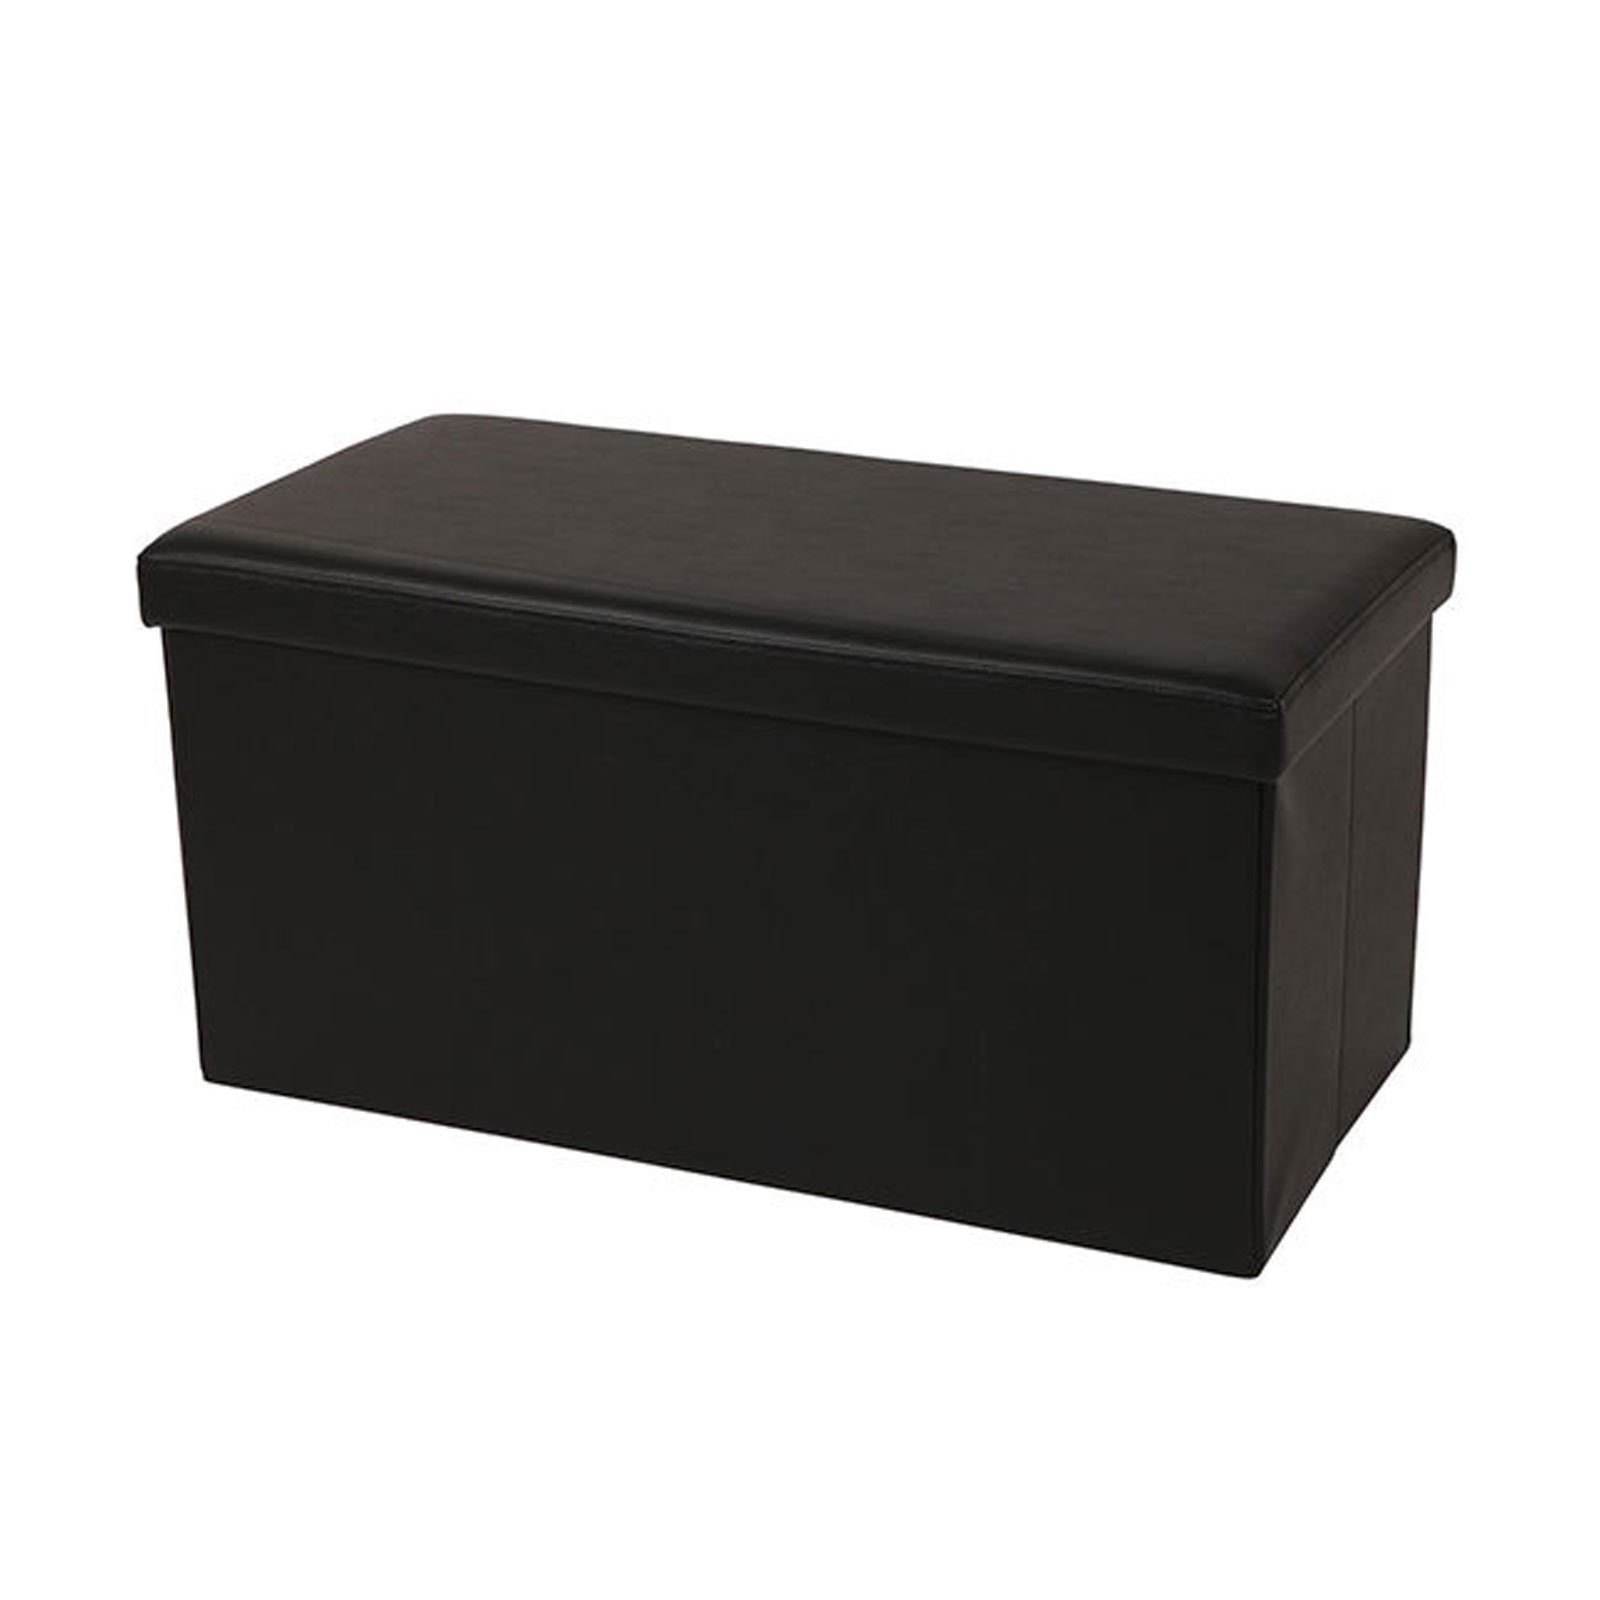 ECHTWERK Sitzwürfel Sitzbank mit Stauraum "SeatBox", Faltbare Polsterbank aus hochwertigem Kunstleder, Bis 300 kg belastbar